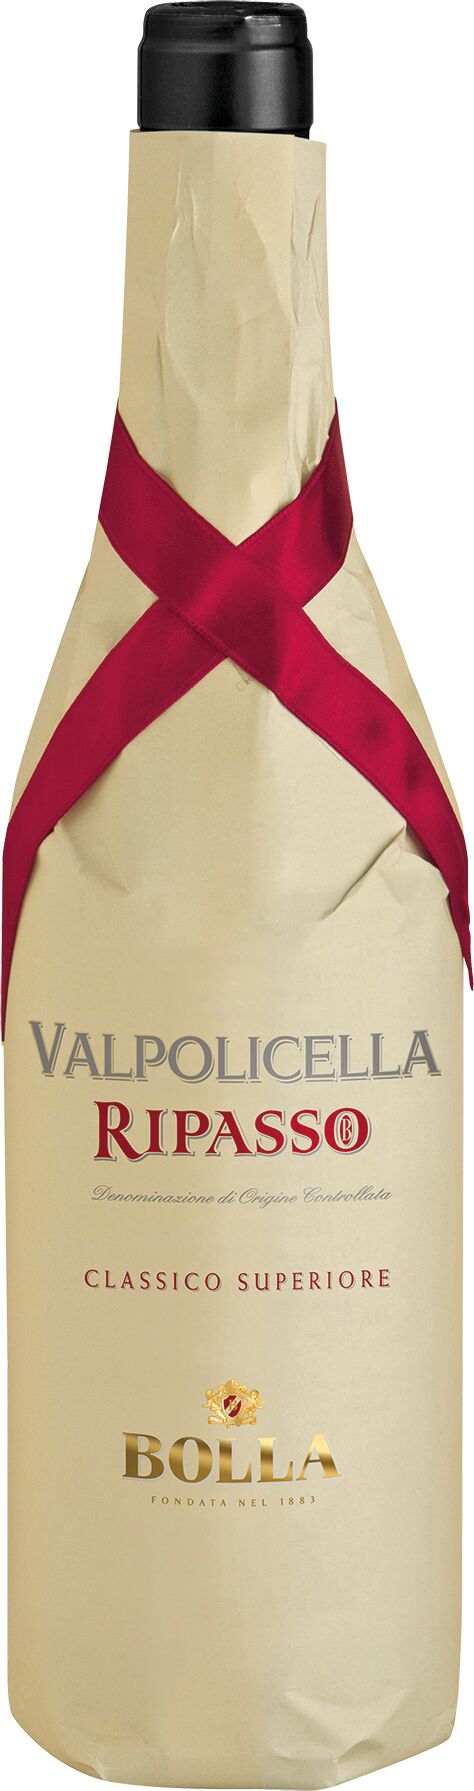 Bolla Valpolicella Ripasso DOC - 2021 Classico l 0.75 Superiore